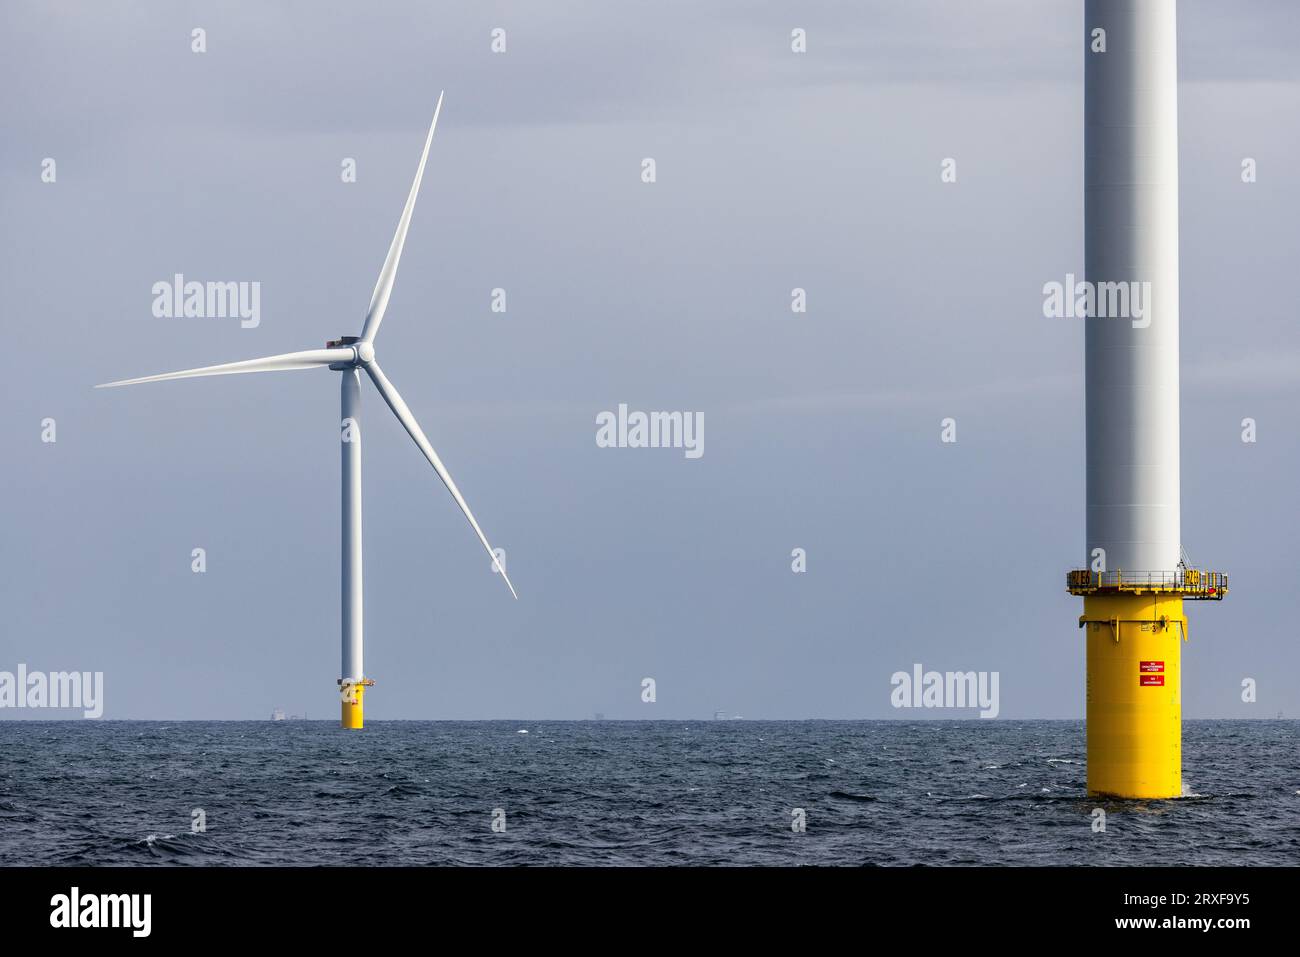 IJMUIDEN - les turbines en mer forment le parc éolien Hollandse Kust Zuid de Vattenfall. Le parc éolien se compose de 139 éoliennes et est situé à environ dix-huit kilomètres de la côte. Il alimente plus de 1,5 millions de foyers. ANP JEFFREY GROENEWEG pays-bas sorti - belgique sorti Banque D'Images